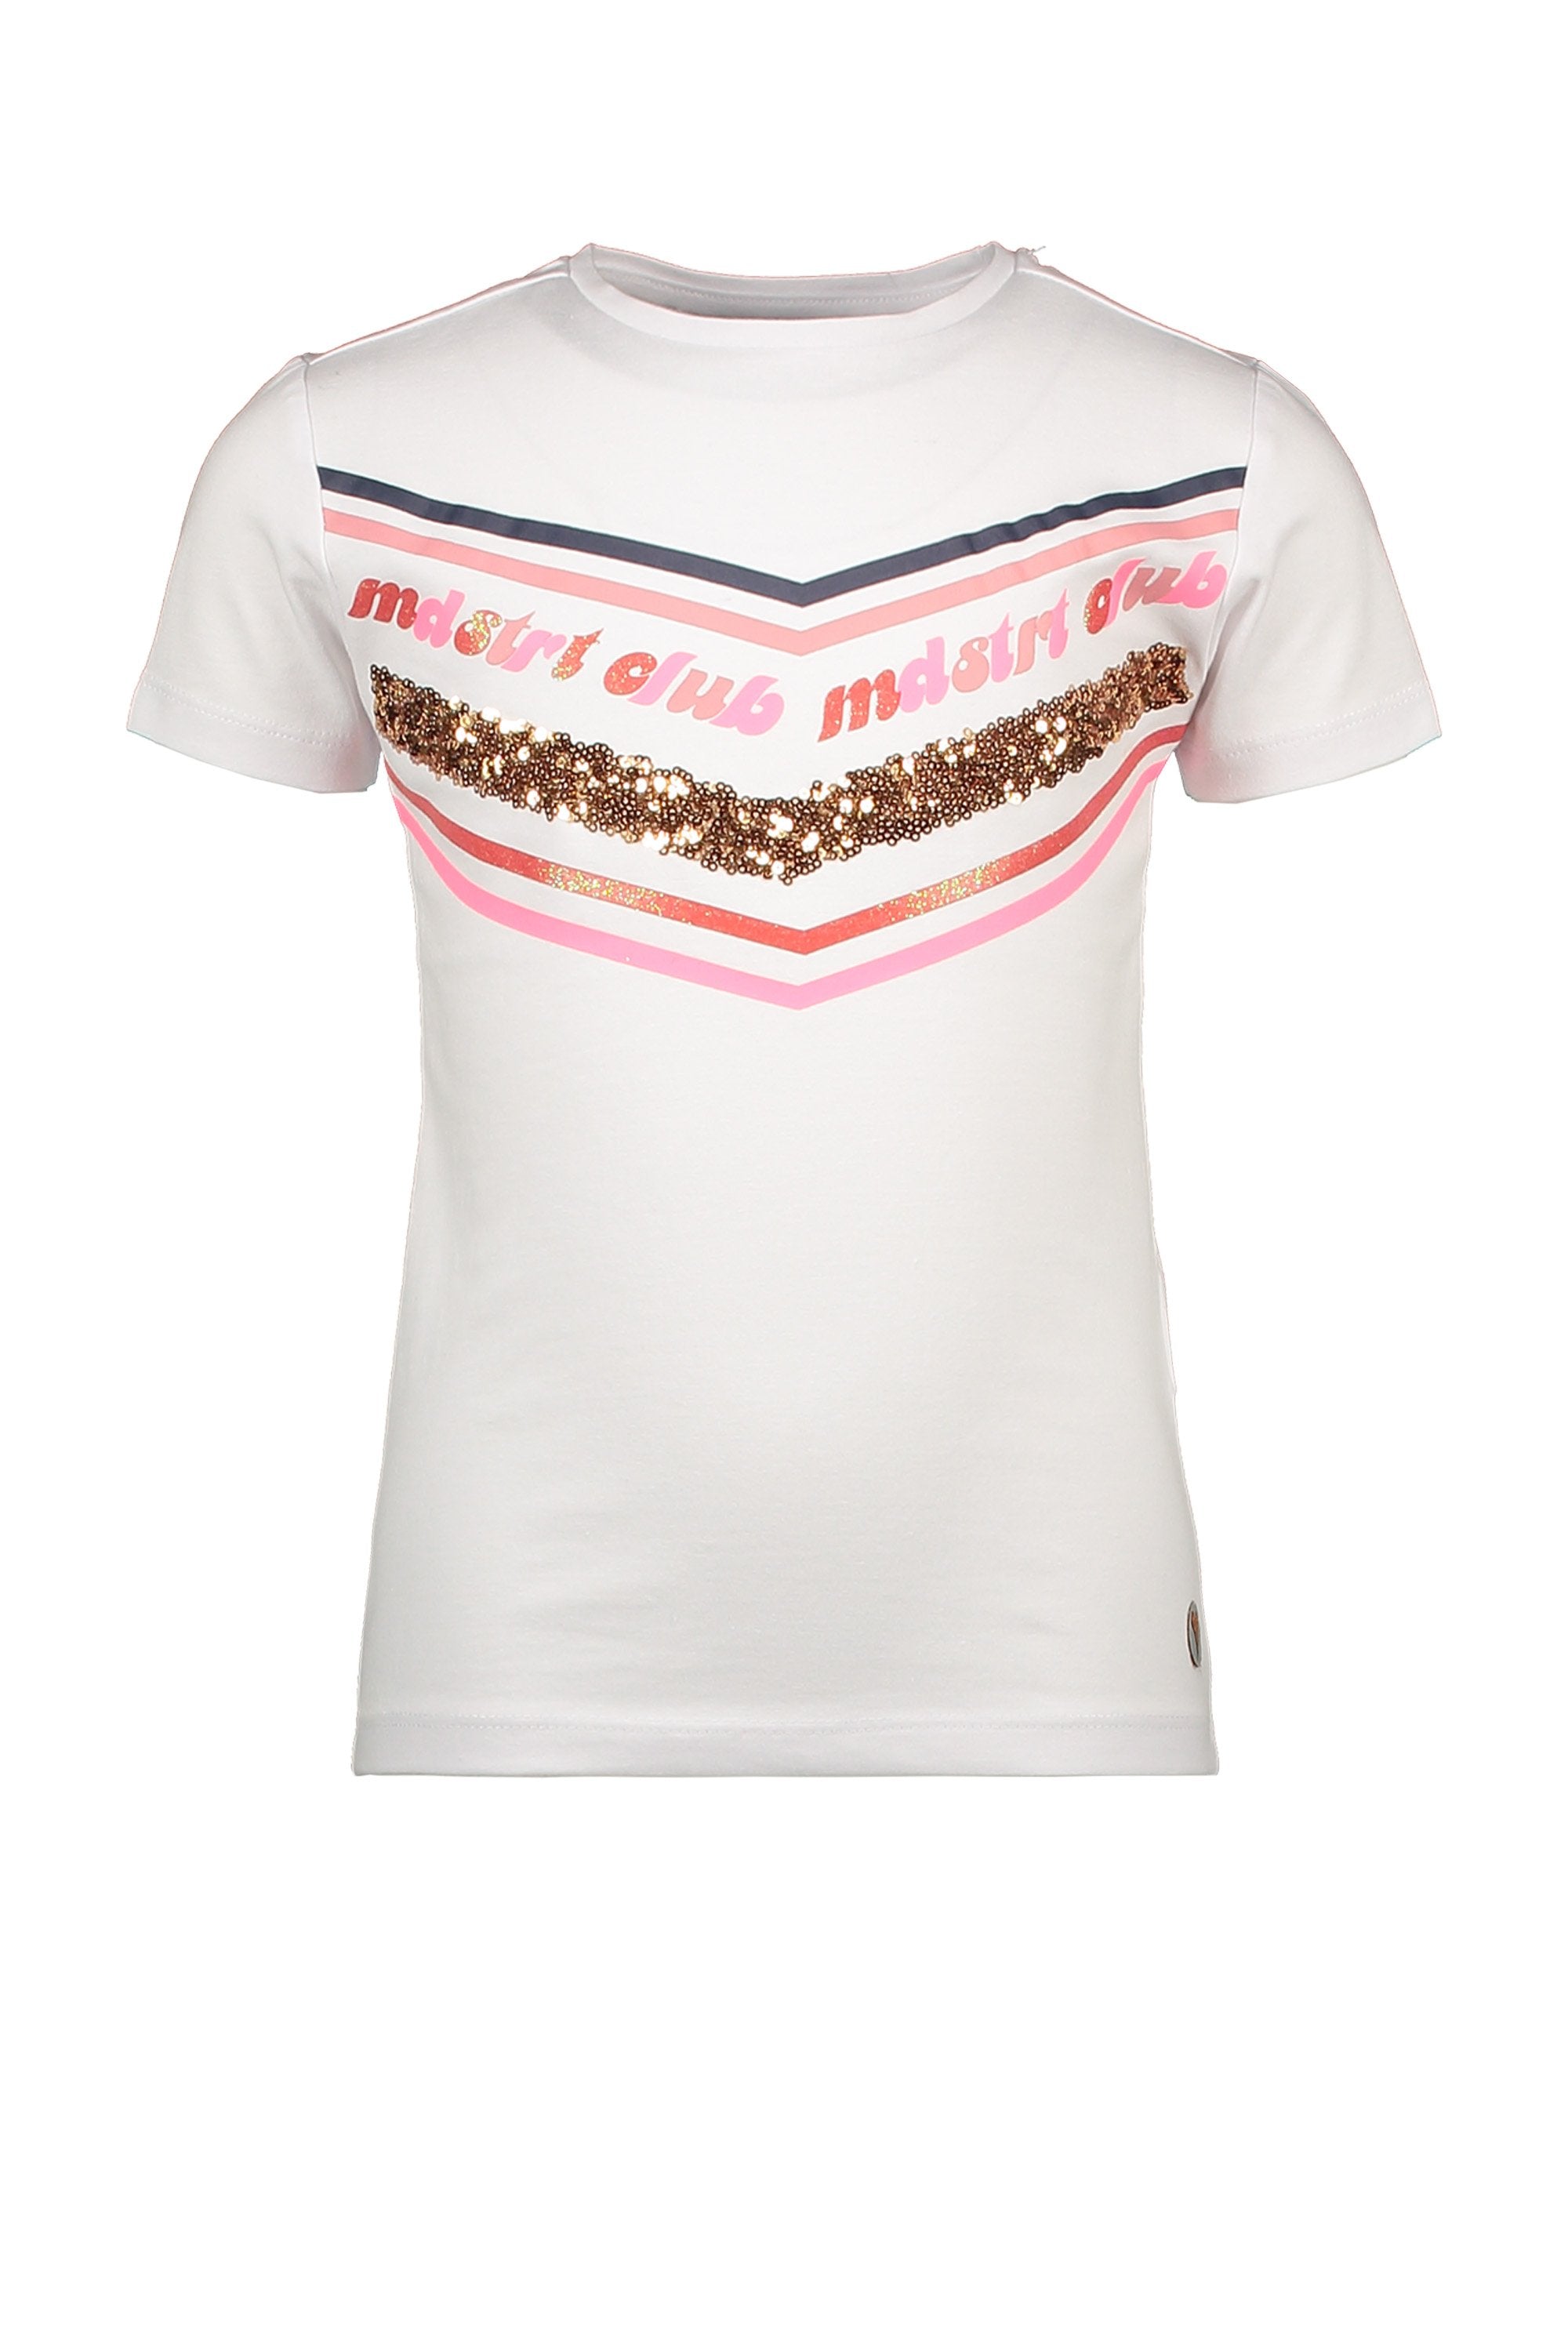 Meisjes T-Shirt Chestprint van Moodstreet in de kleur white in maat 110/116.